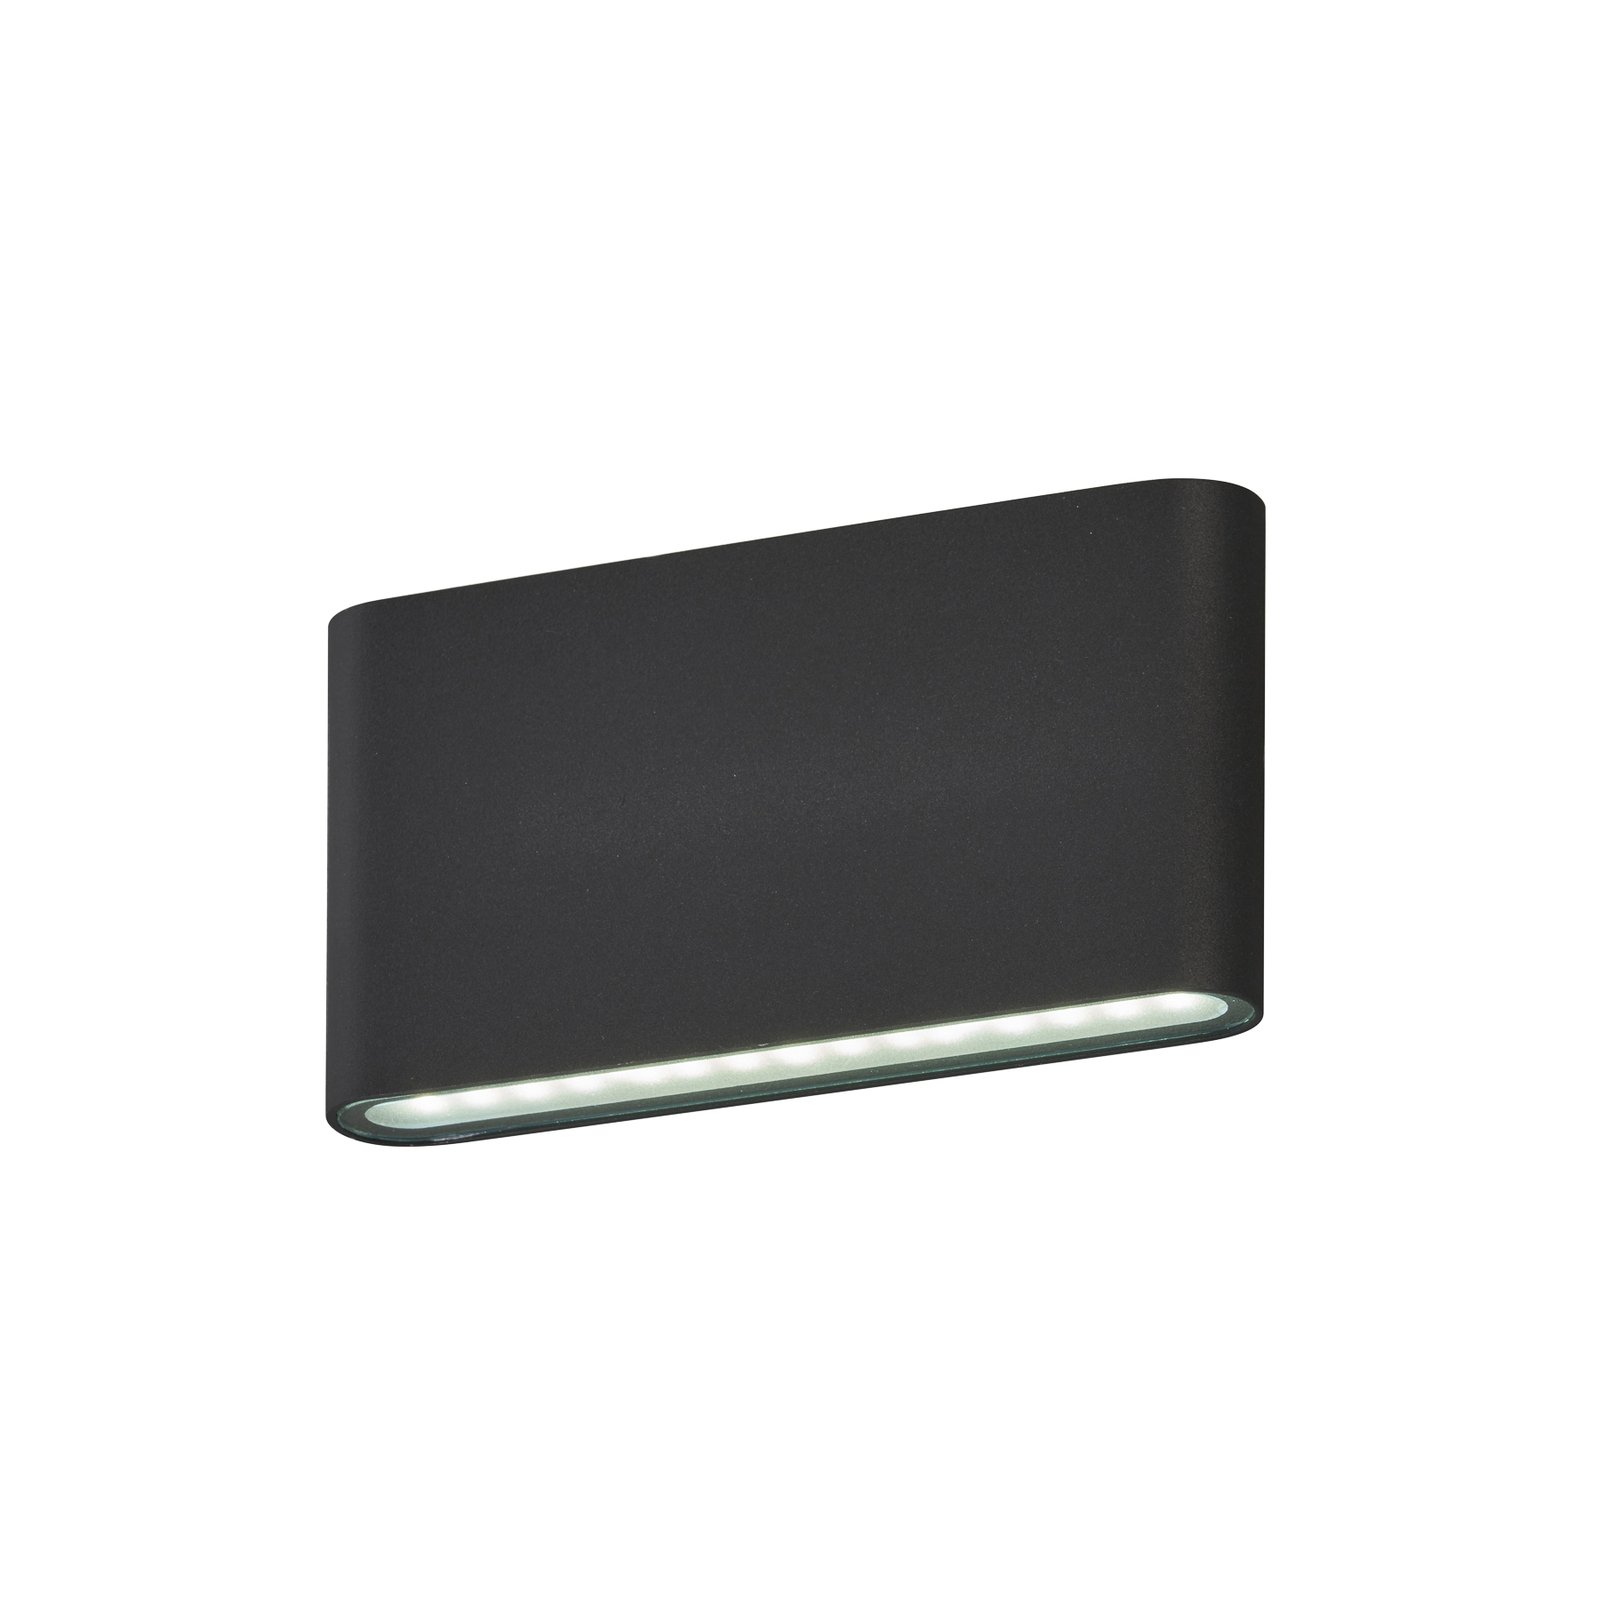 Aplique de exterior LED Scone, negro, ancho 17,5 cm, 2 luces.